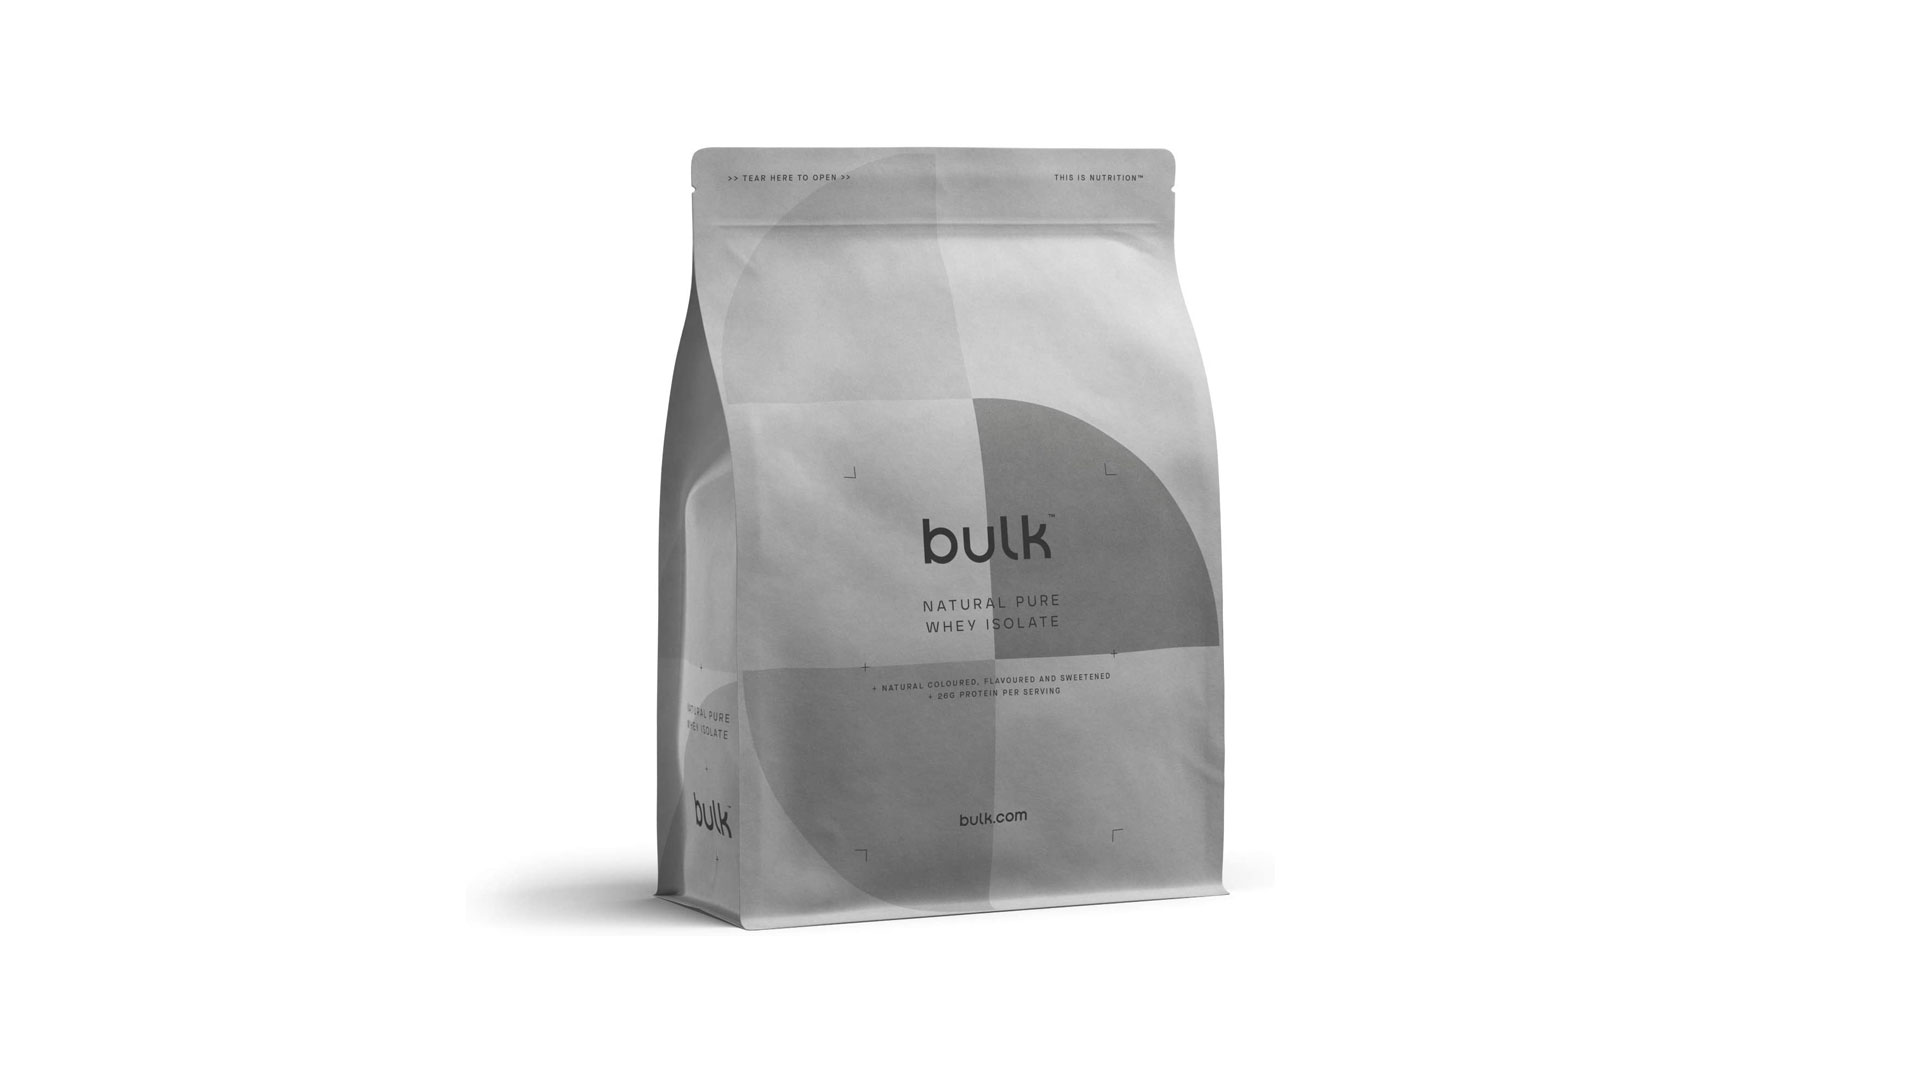 Best protein powder: Bulk protein powder